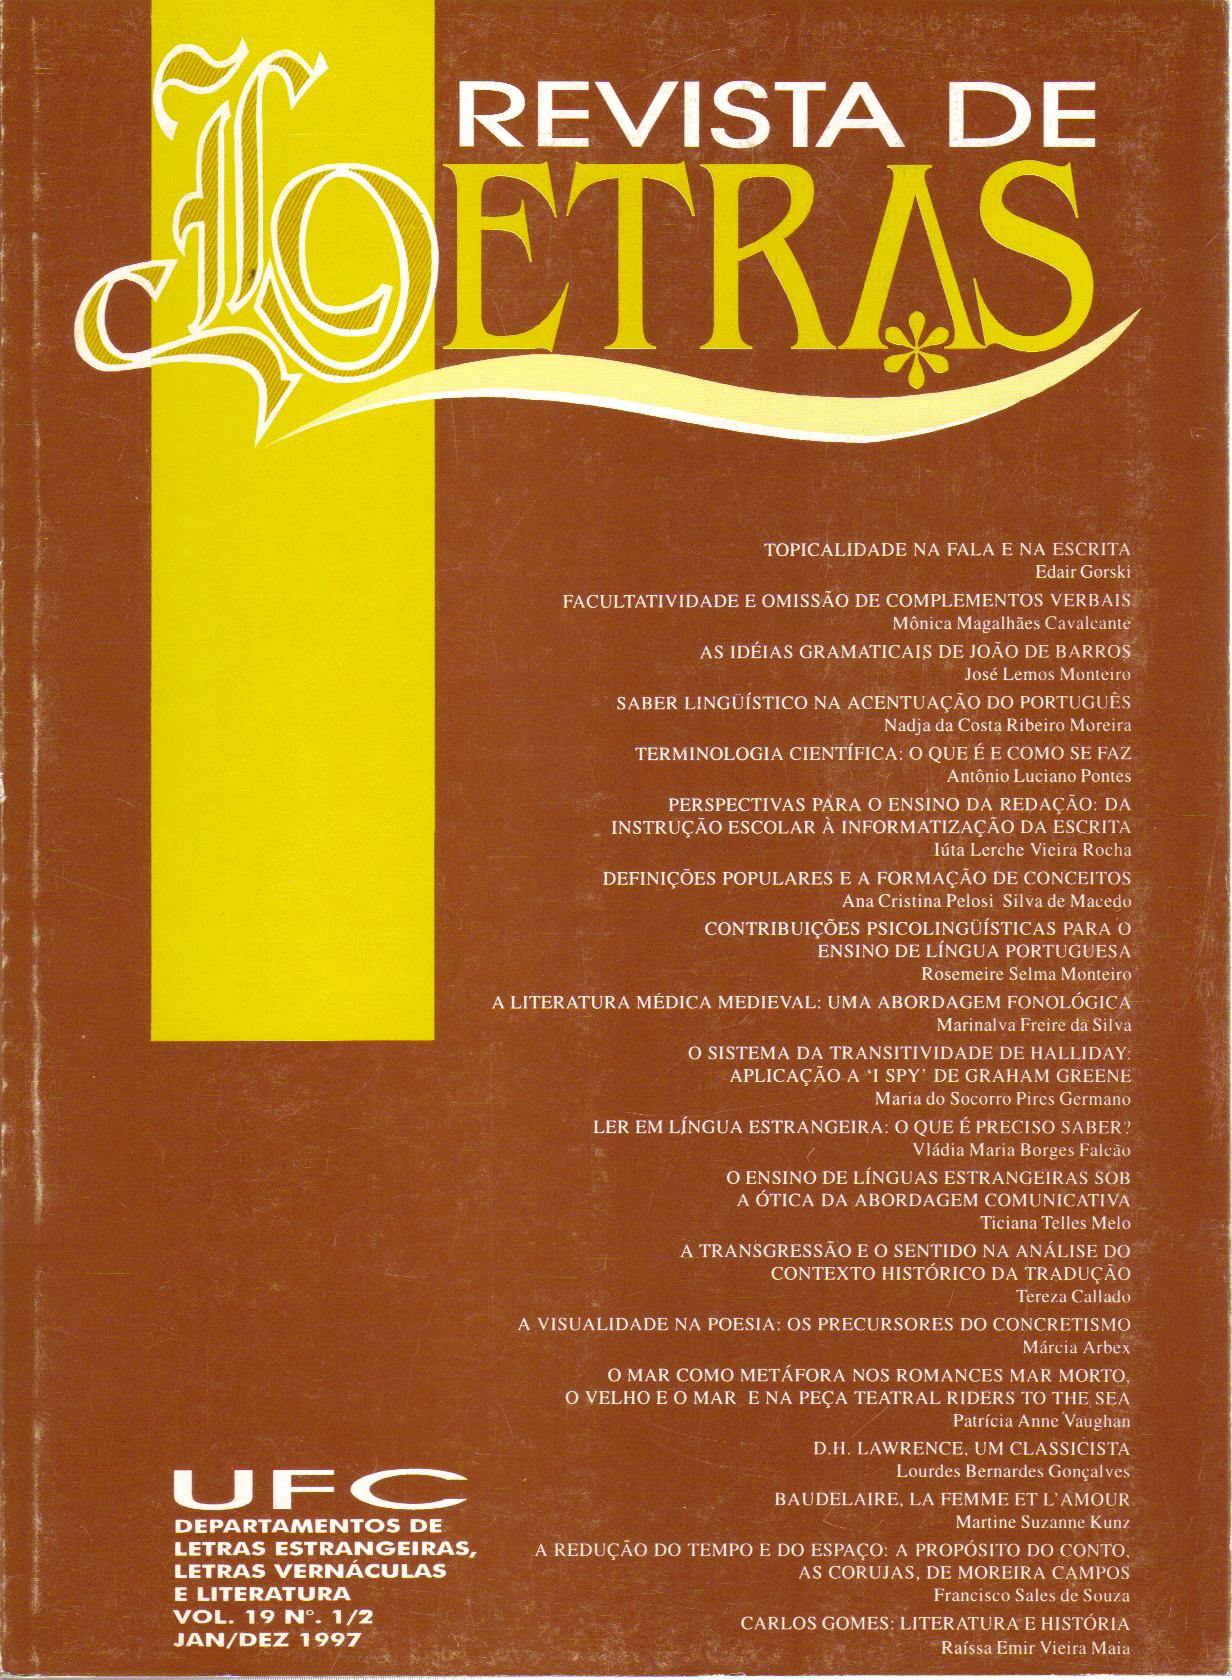 					Visualizar v. 2 n. 18 (1996): REVISTA DE LETRAS V. 2, N. 18 (1996)
				